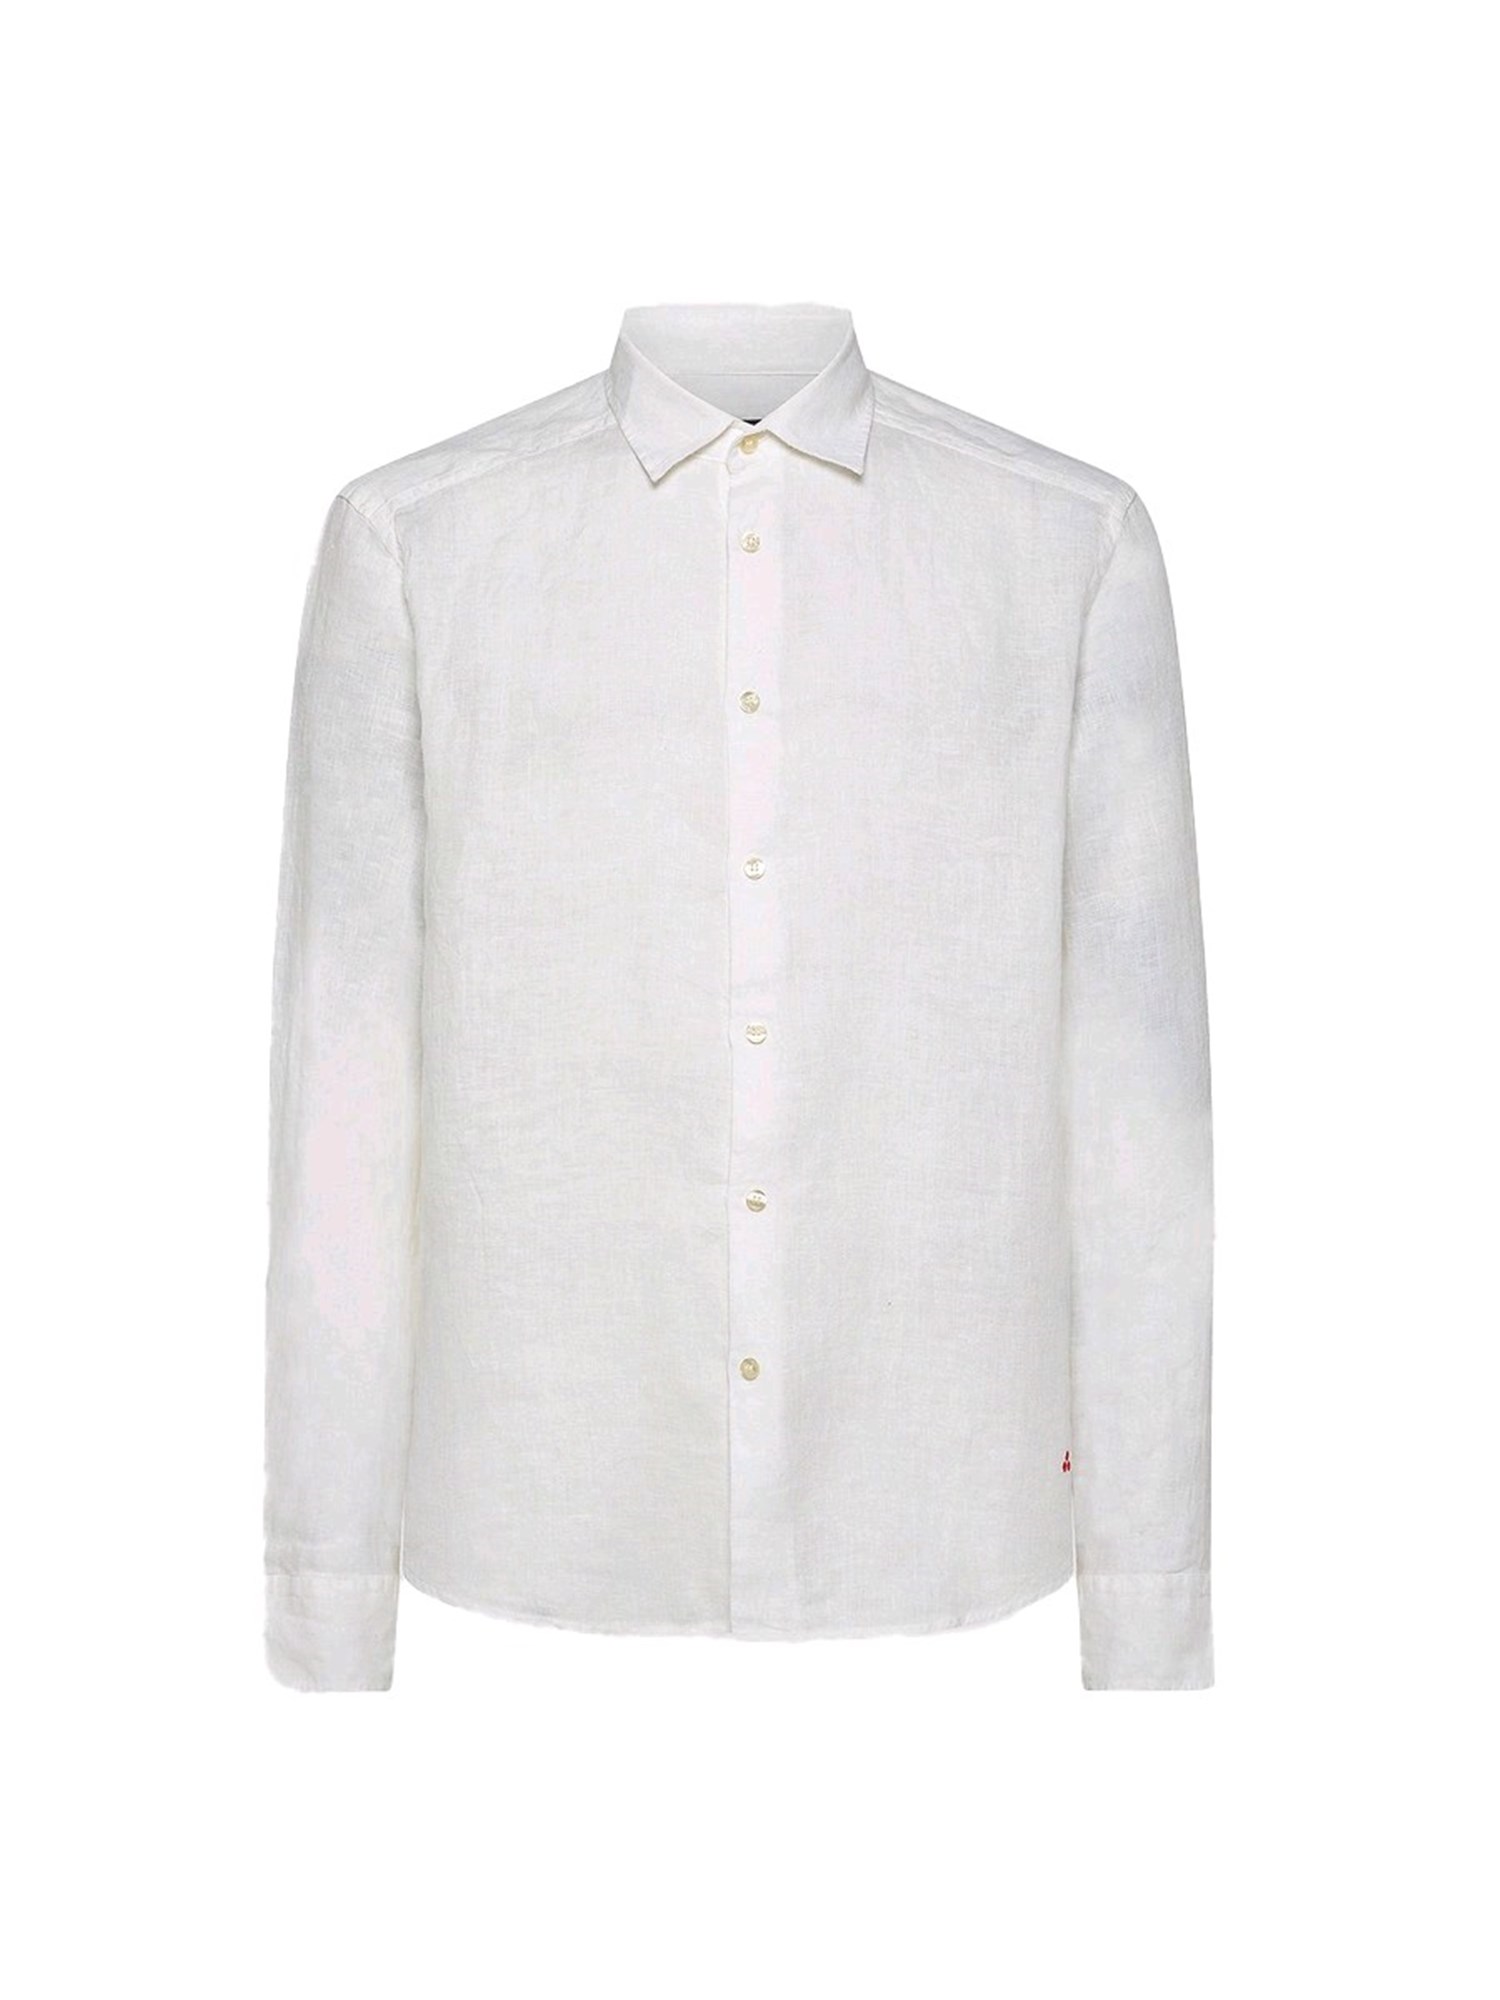 Peuterey VINTEX LINO BIAOF Bianco Abbigliamento Uomo Camicia Uomo